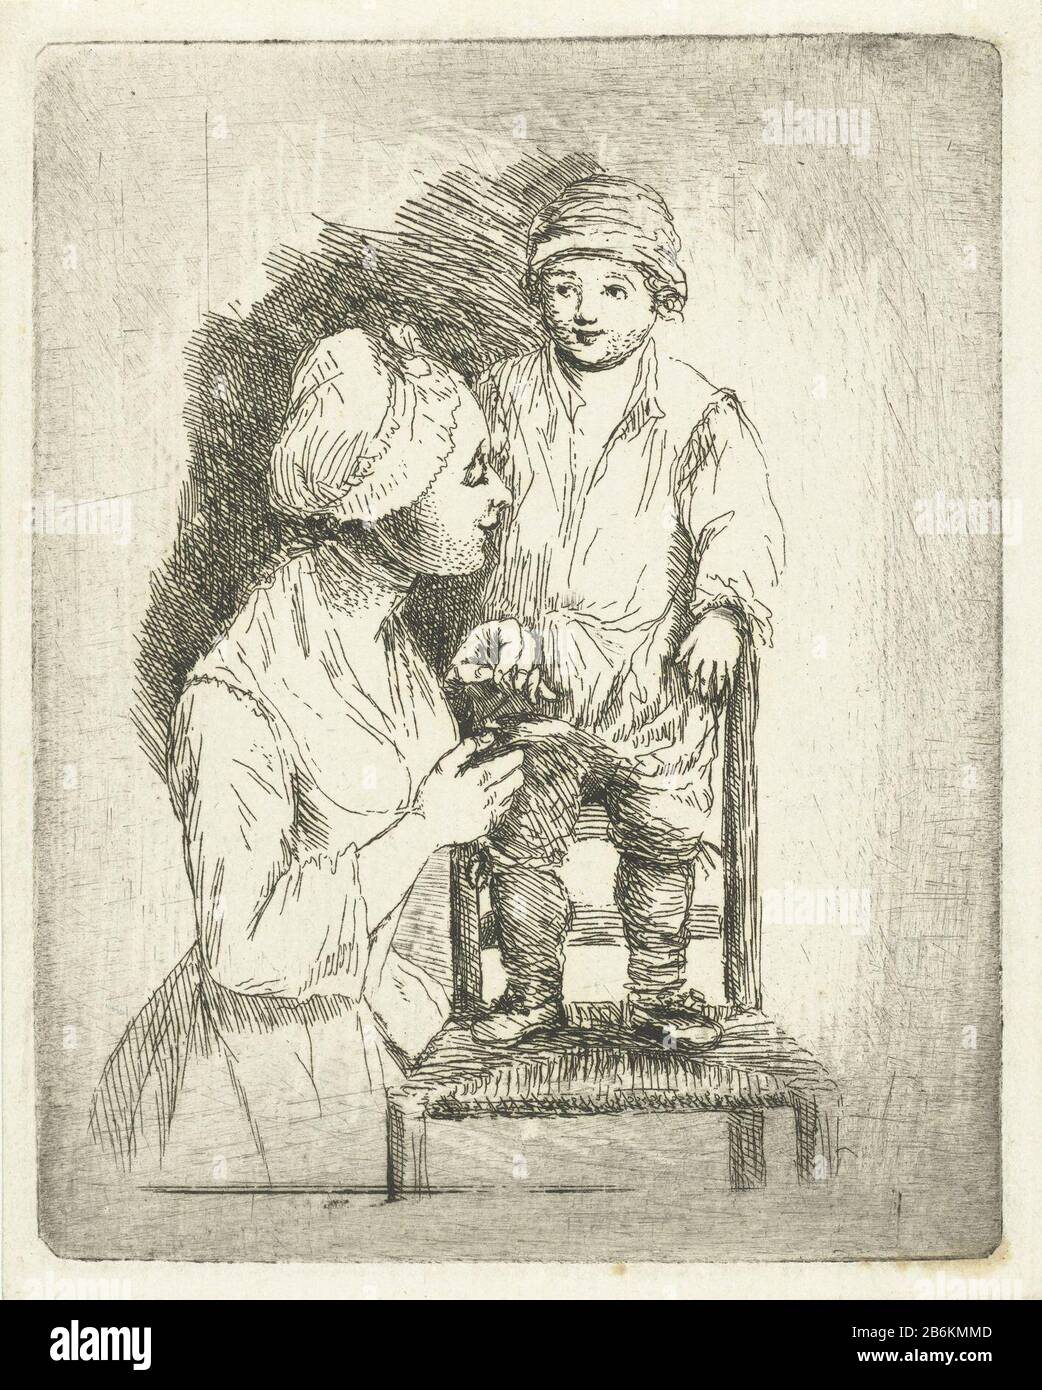 Eine Mutter legt einen Knopf auf die Hose ihres Sohnes, EINES Jungen, der  auf einem Stuhl steht. Seine Mutter ist mit Nadel und Faden beschäftigt, um  seinen broek zu drehen. Hersteller :